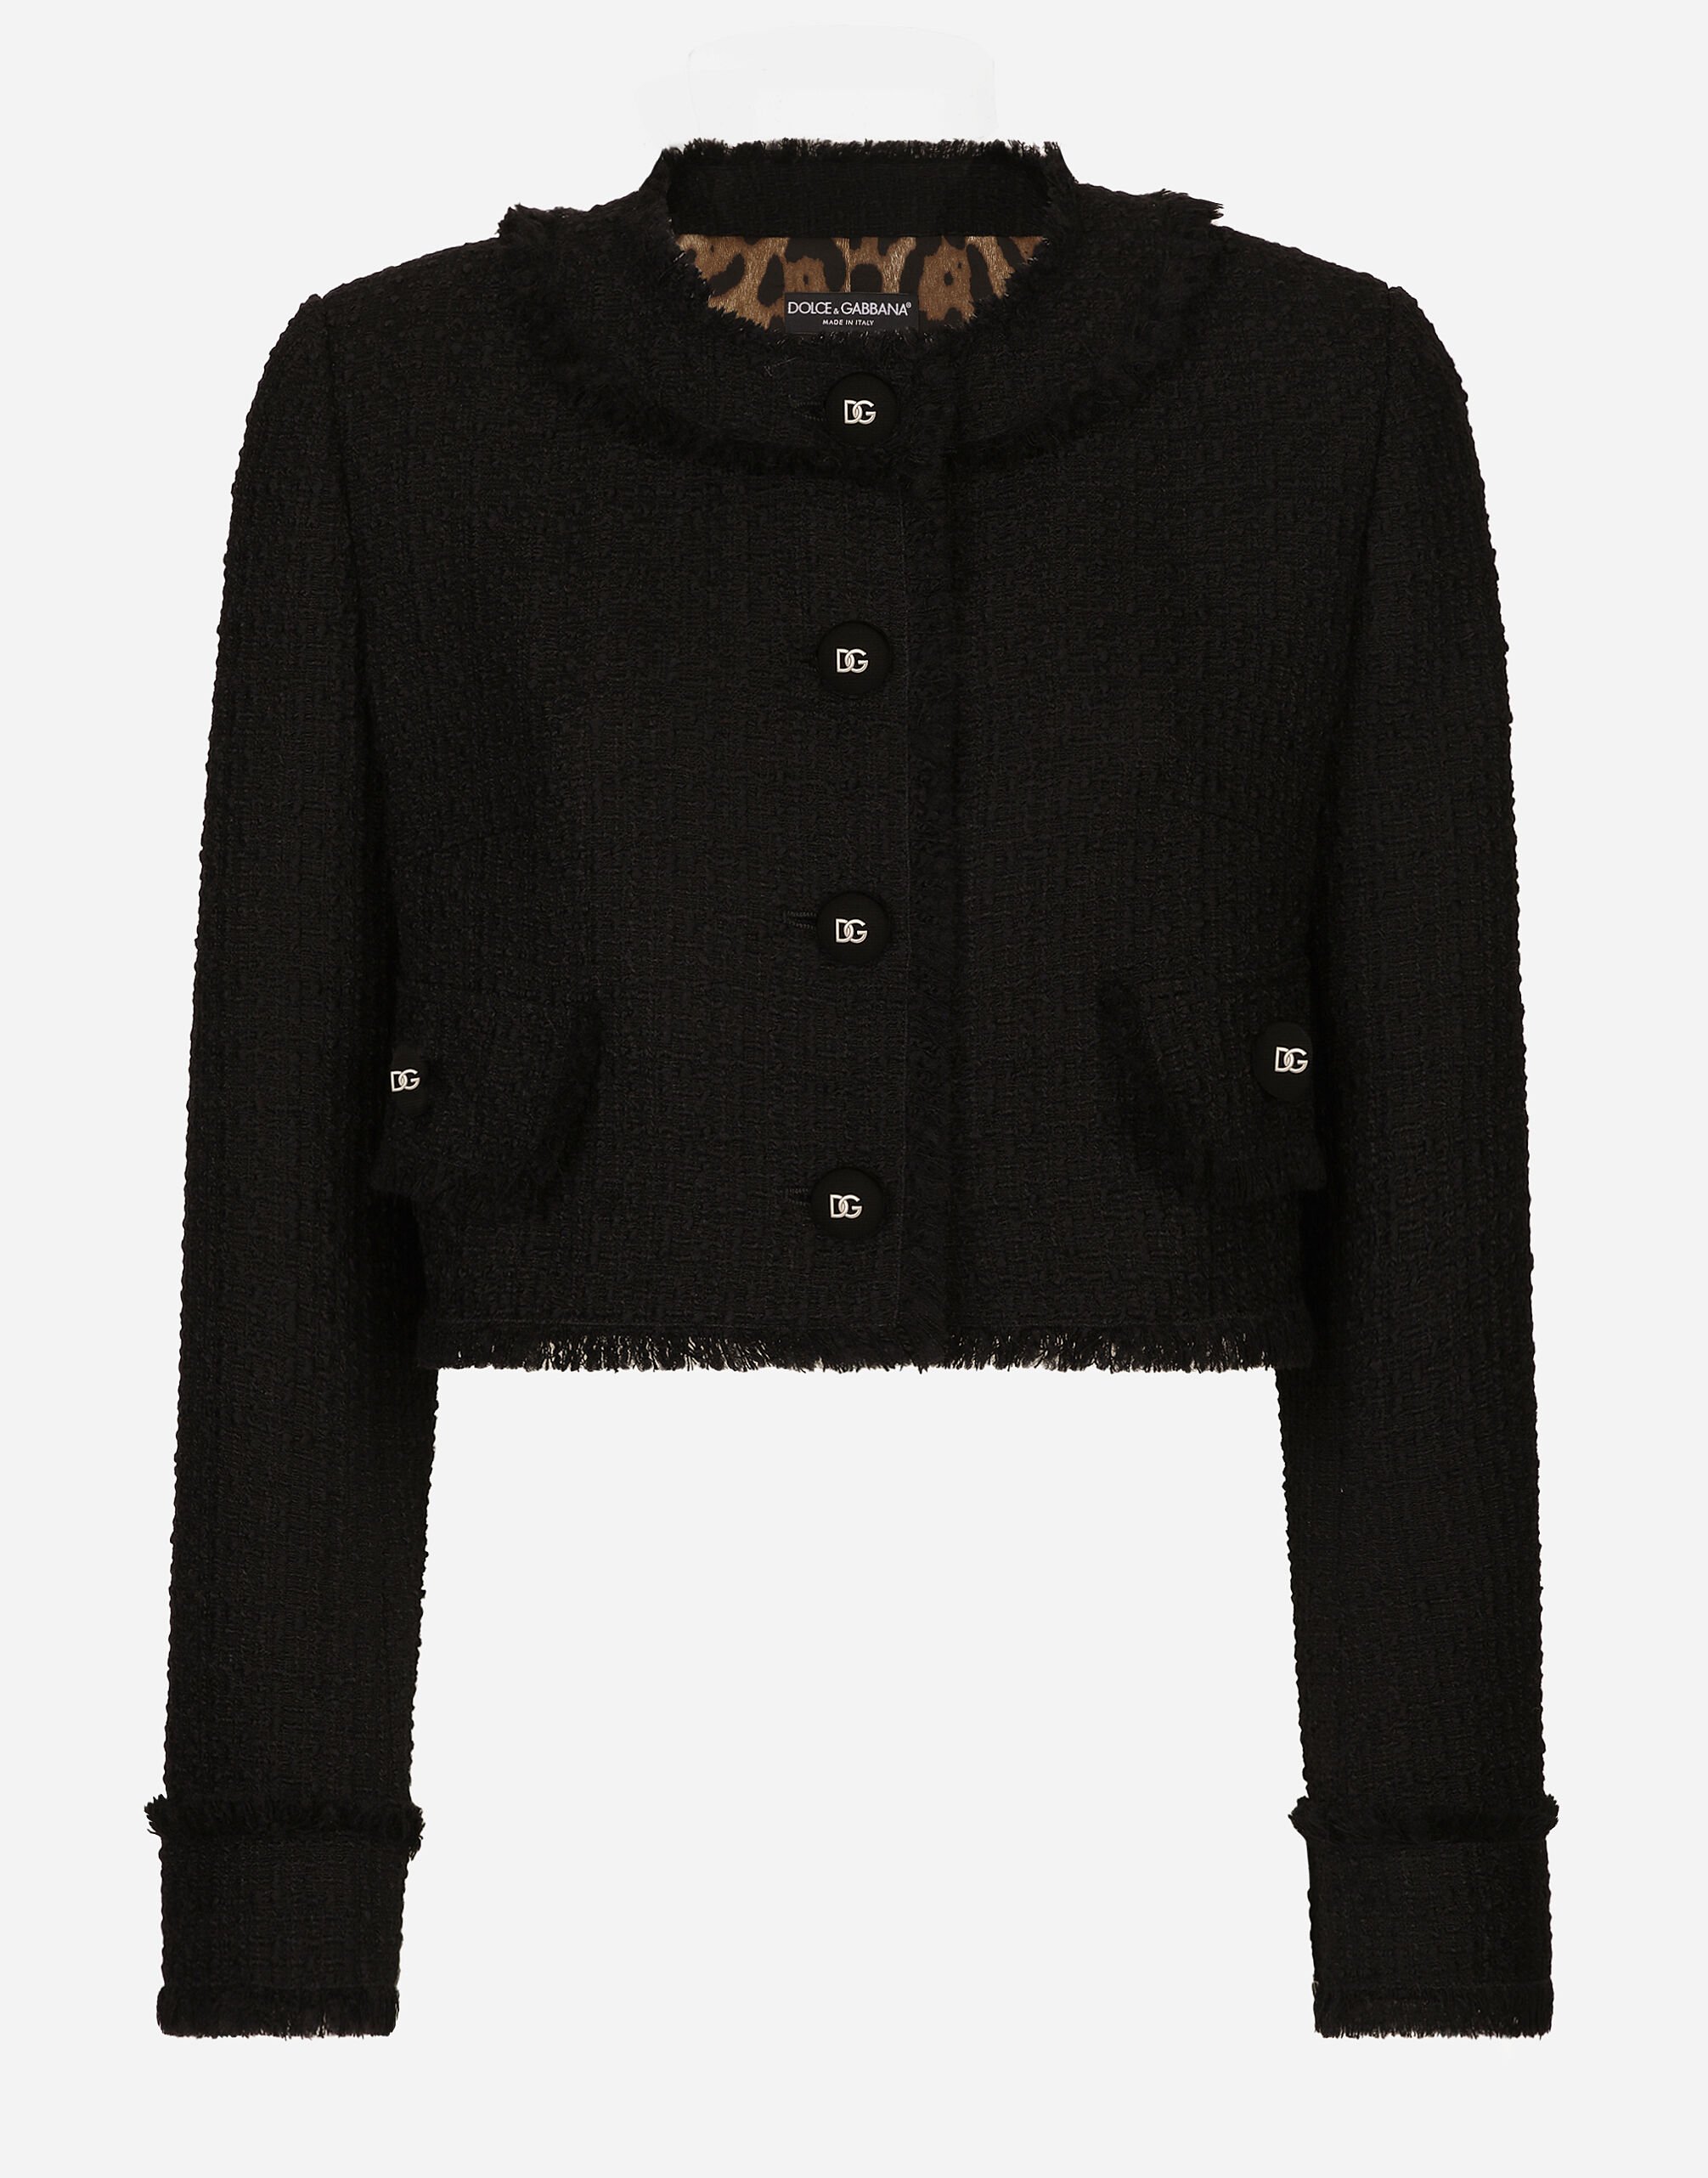 Dolce & Gabbana Short raschel tweed jacket Print F29UDTIS1P4